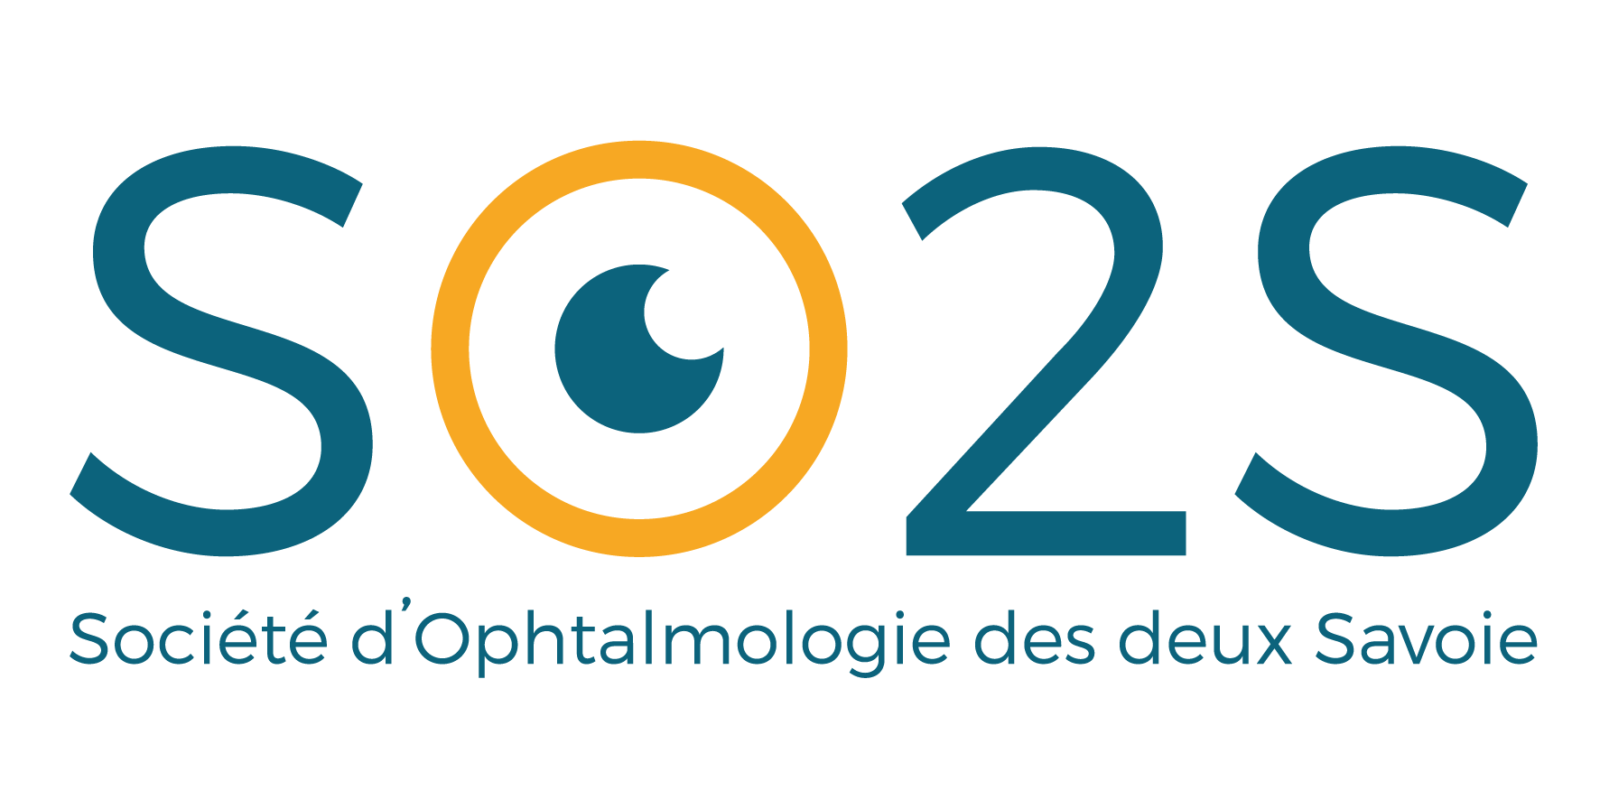 Creation de logo association SO2S - Société d’Ophtalmologie des deux Savoie - LOGO HD